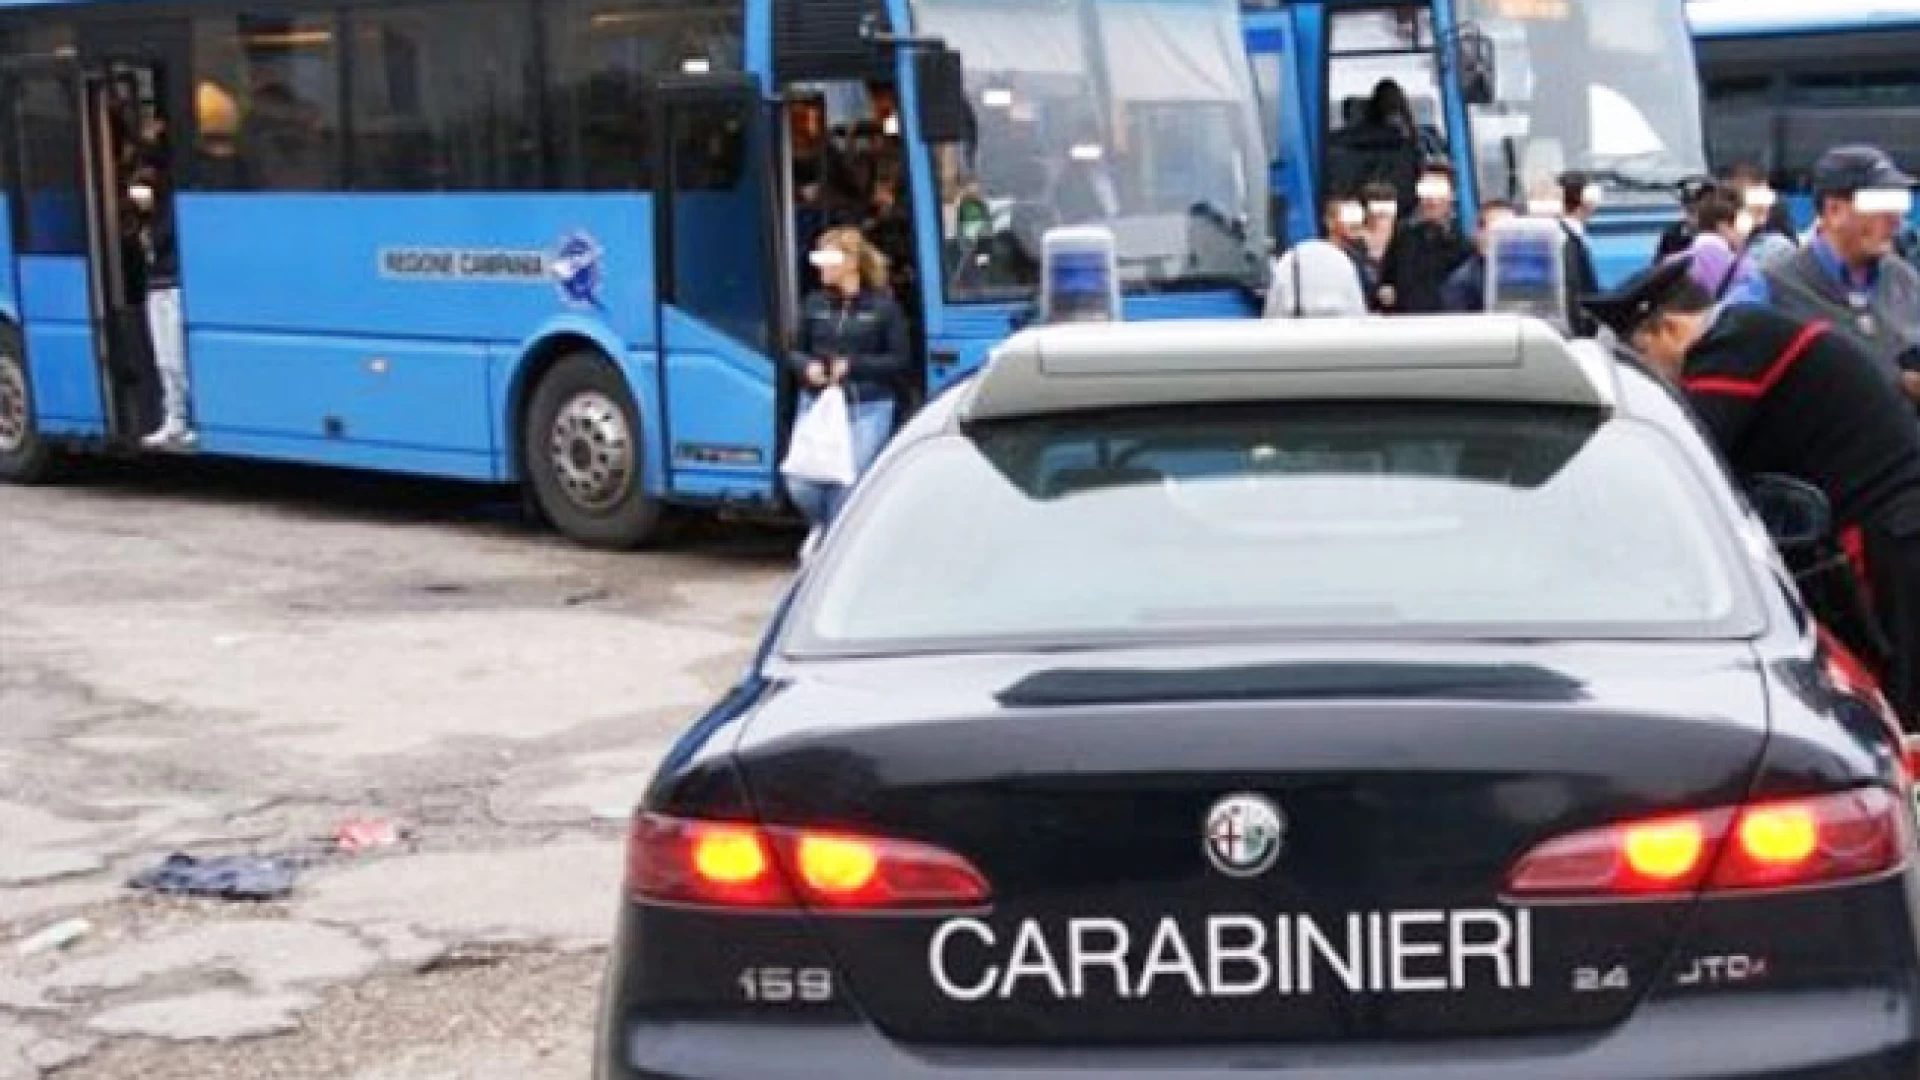 Isernia: Controlli antidroga dei Carabinieri presso Istituti Scolastici e Stazione Ferroviaria, due studentesse trovate in possesso di hashish.